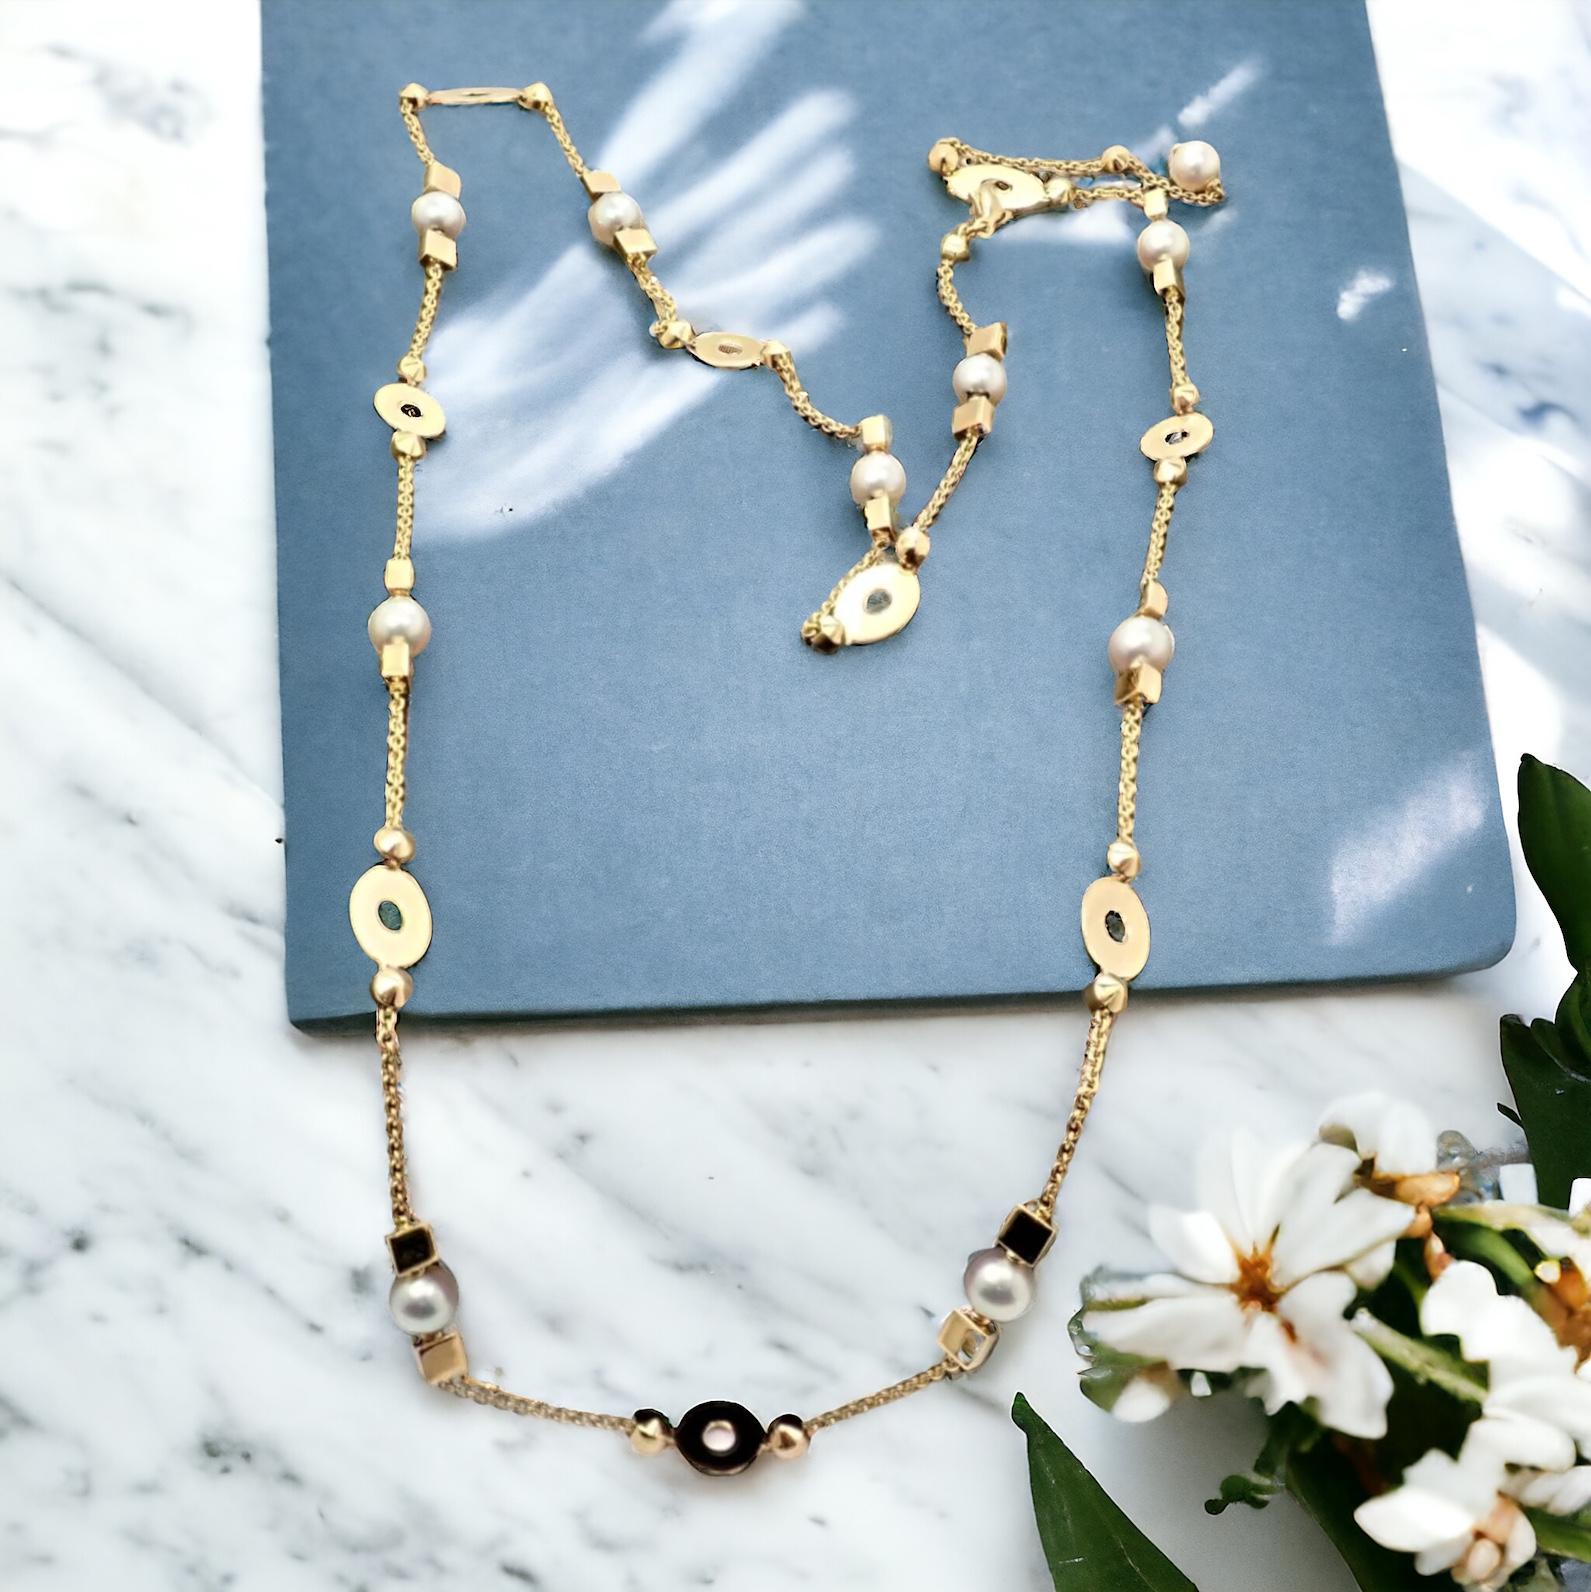 Le collier de perles de 7 mm en or jaune 18k de Bulgari Bvlgari Lucea, d'une longueur de 34 pouces, présente un design élégant avec des perles lustrées de 7 mm. Réalisé en or jaune 18 carats, ce collier de 34 pouces incarne l'élégance et la